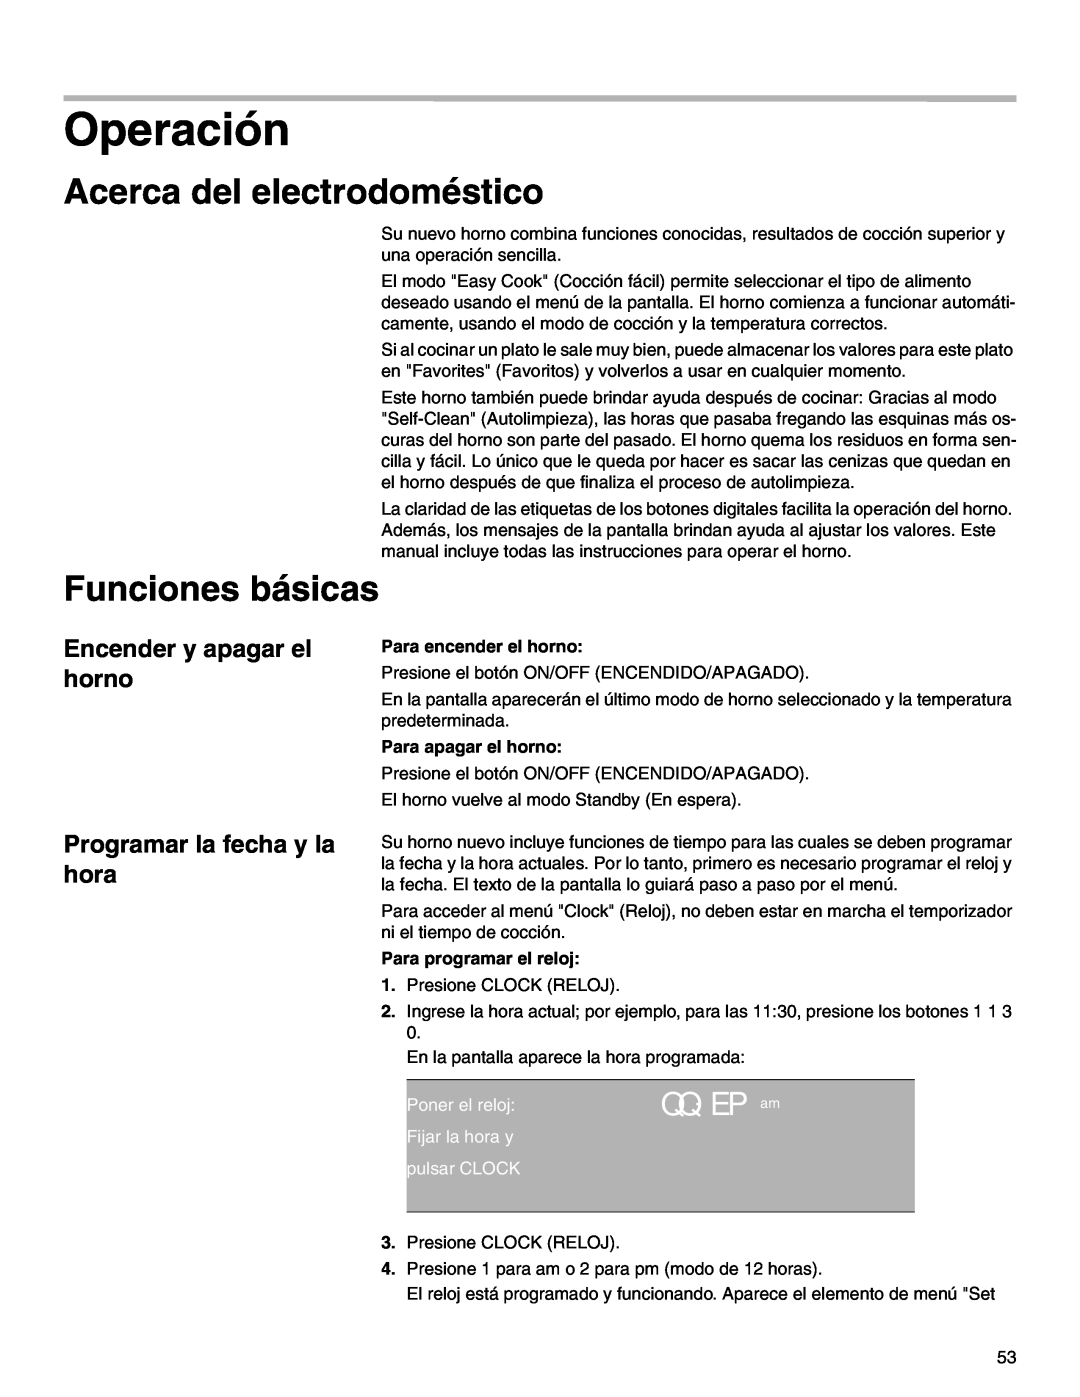 Thermador M301E, M271E manual Operación, Acerca del electrodoméstico, Funciones básicas, QQ: EP am, Para encender el horno 